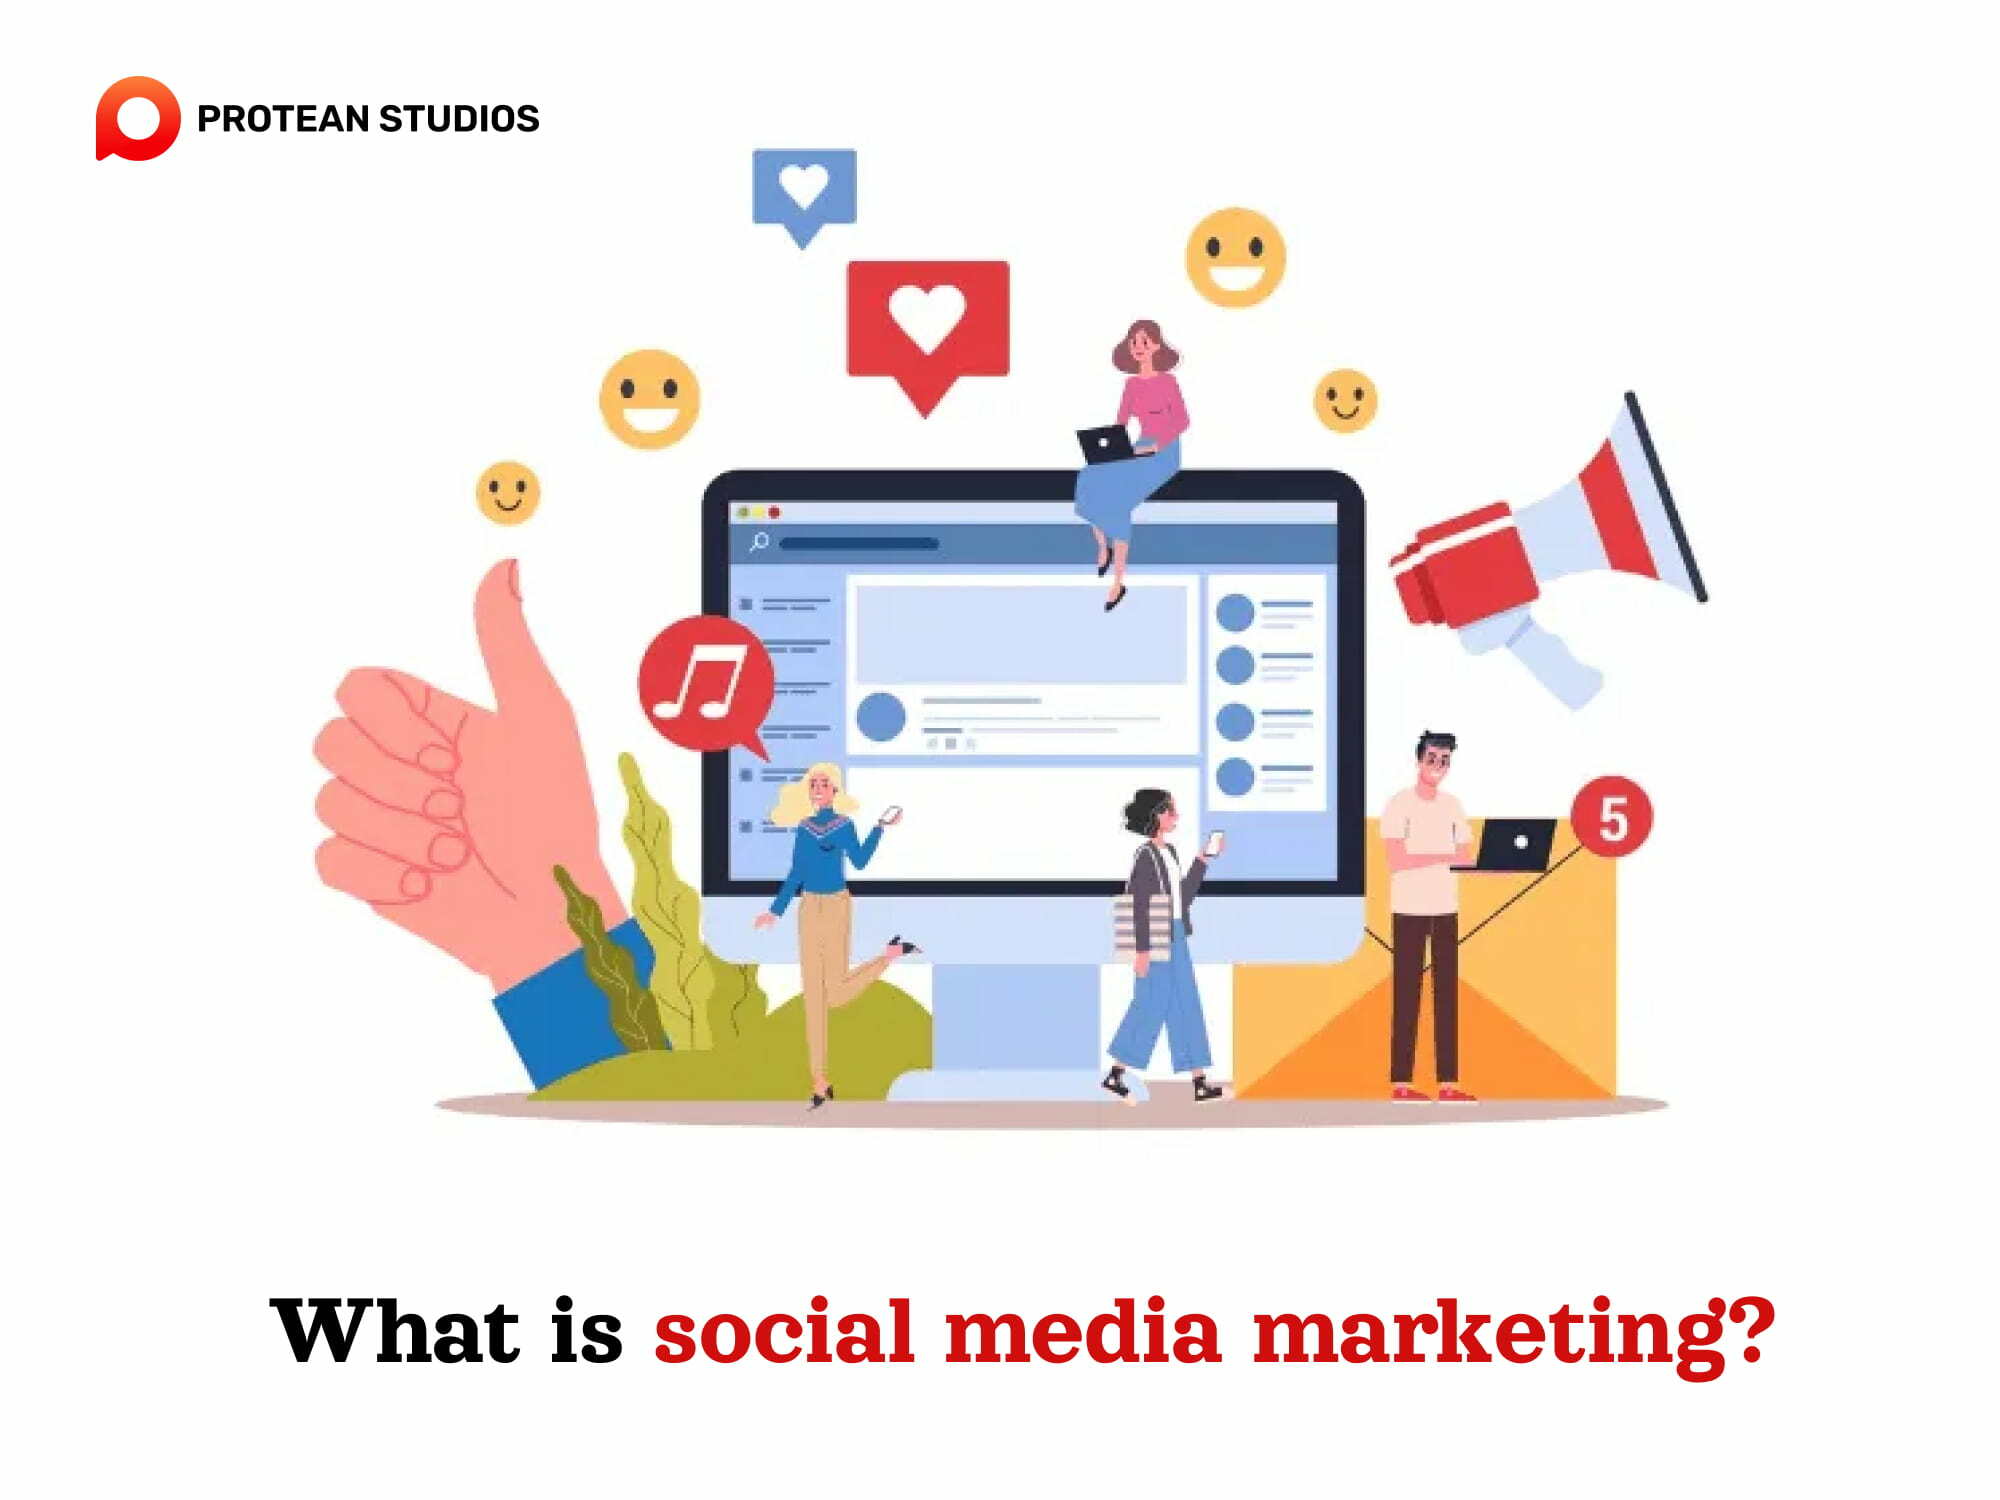 Definition of social media marketing